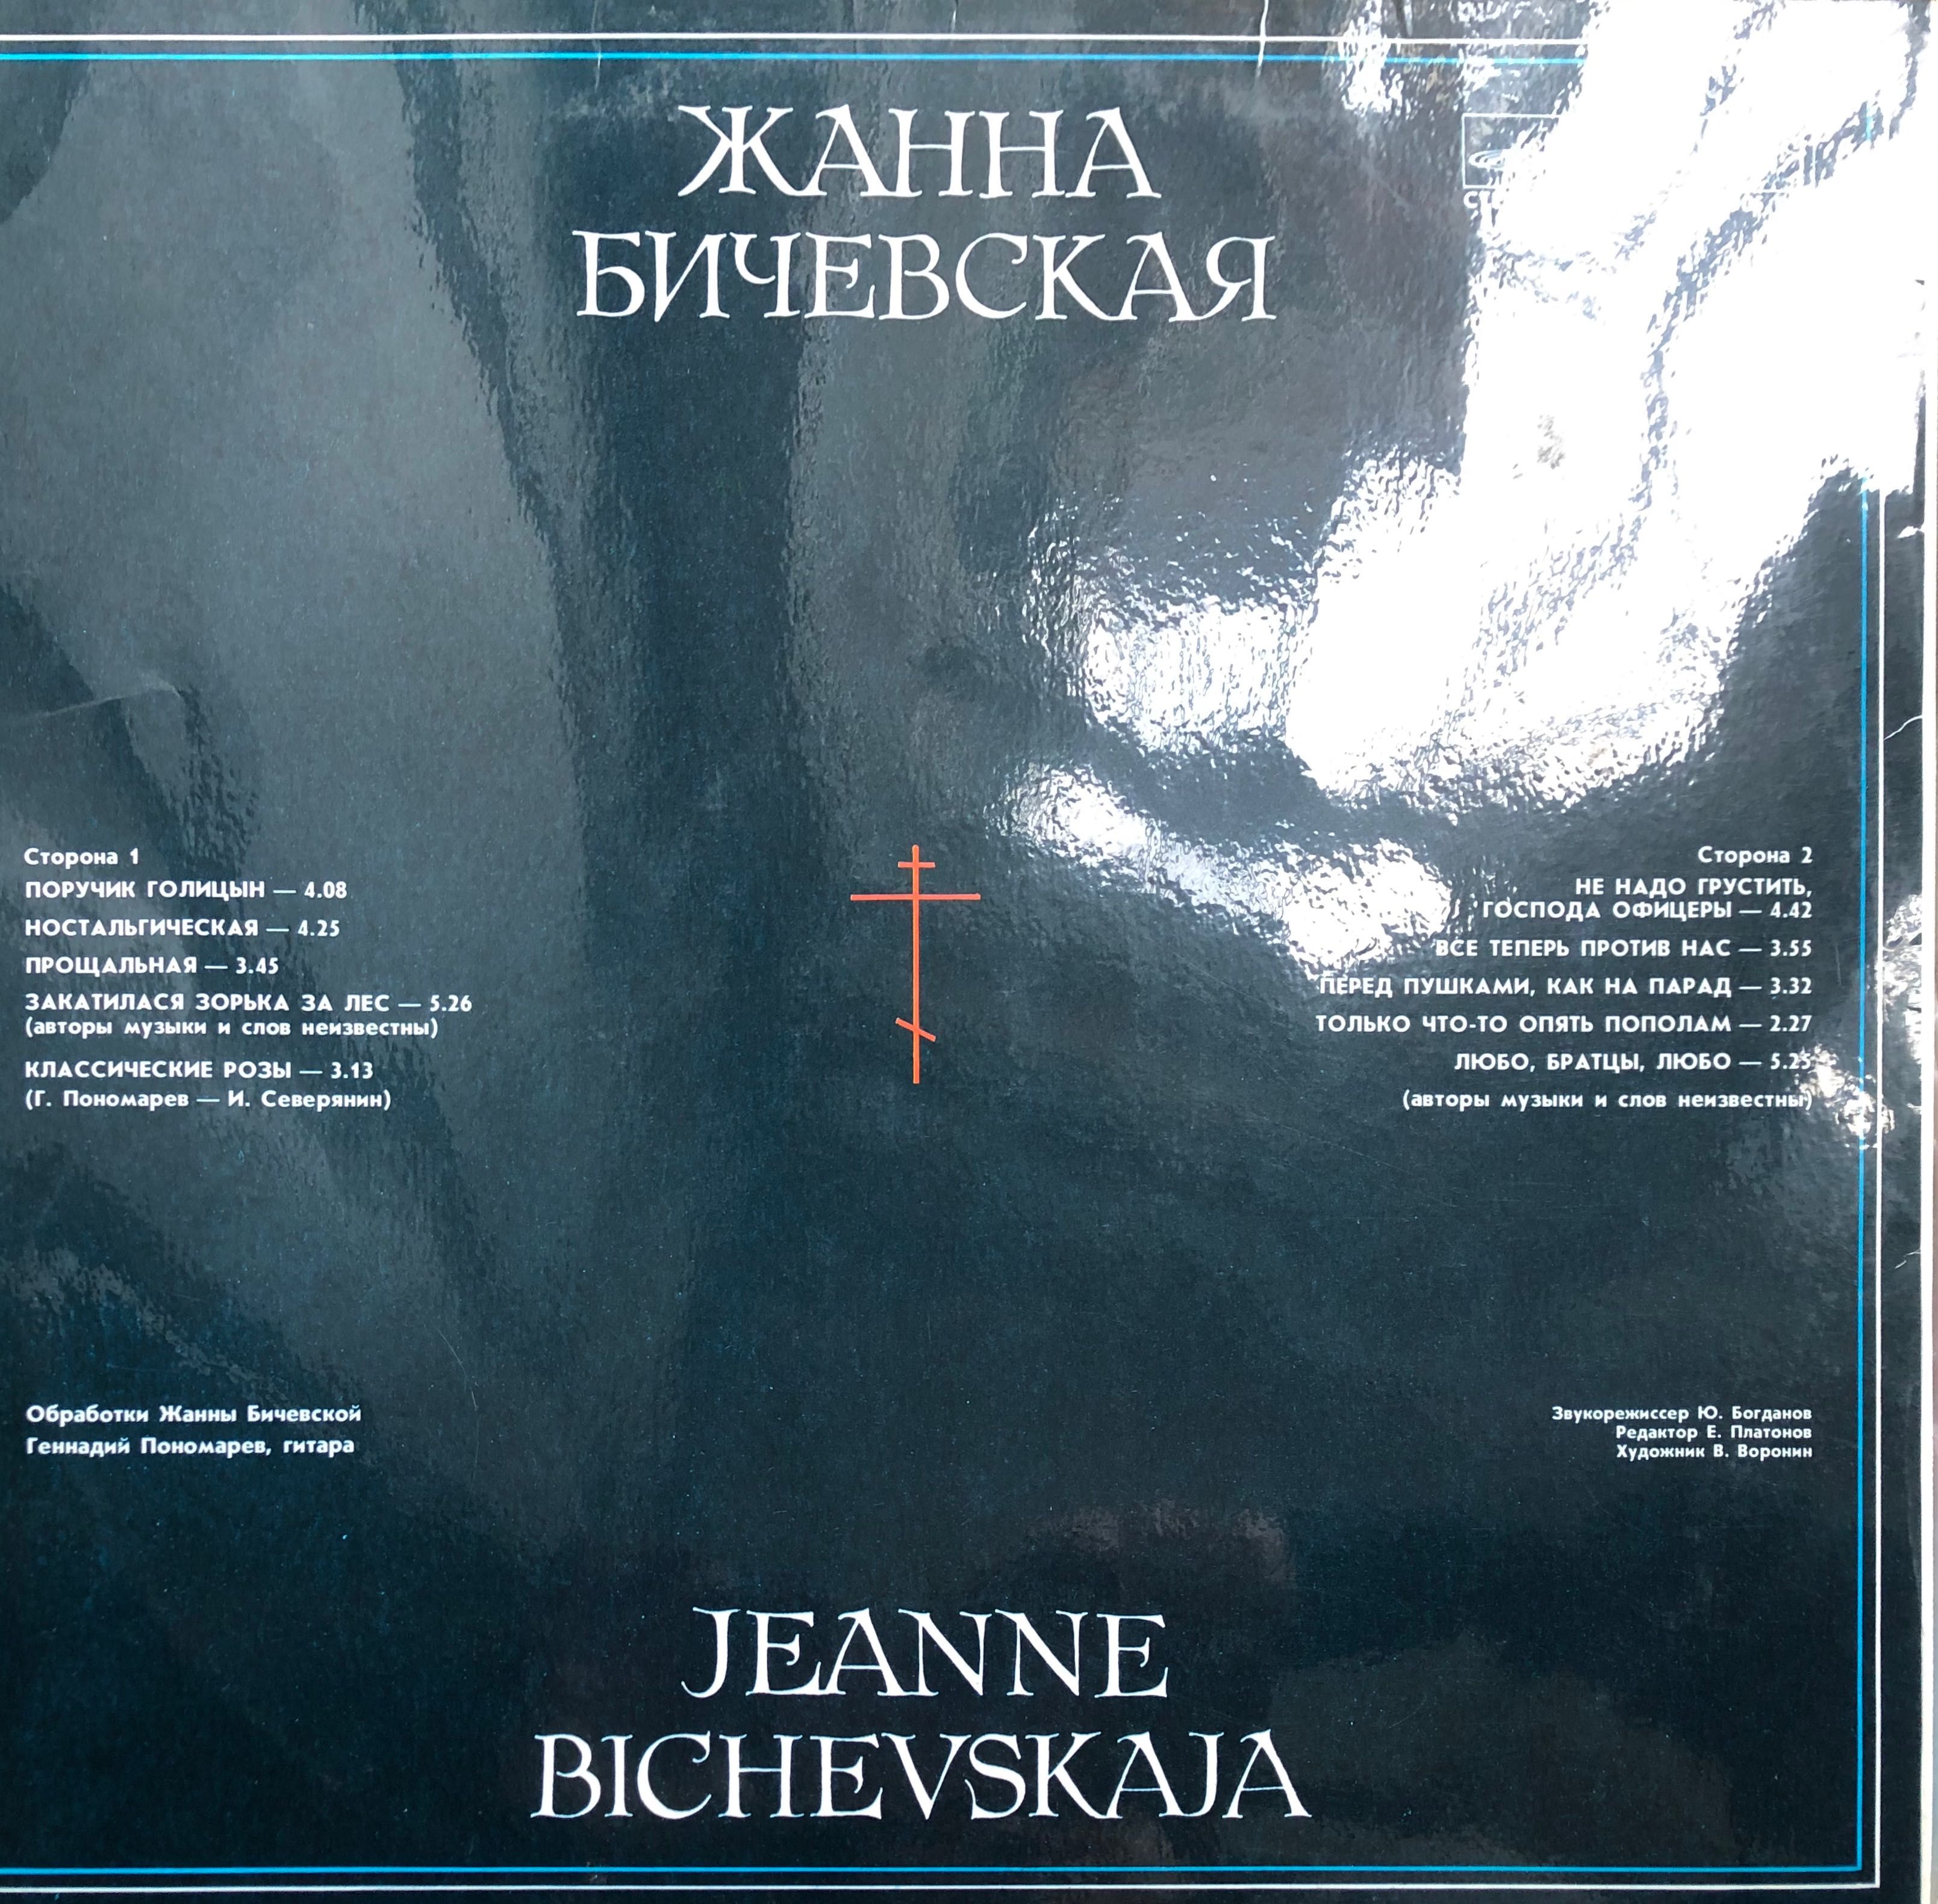 Виниловая пластинка Жанна Бичевская